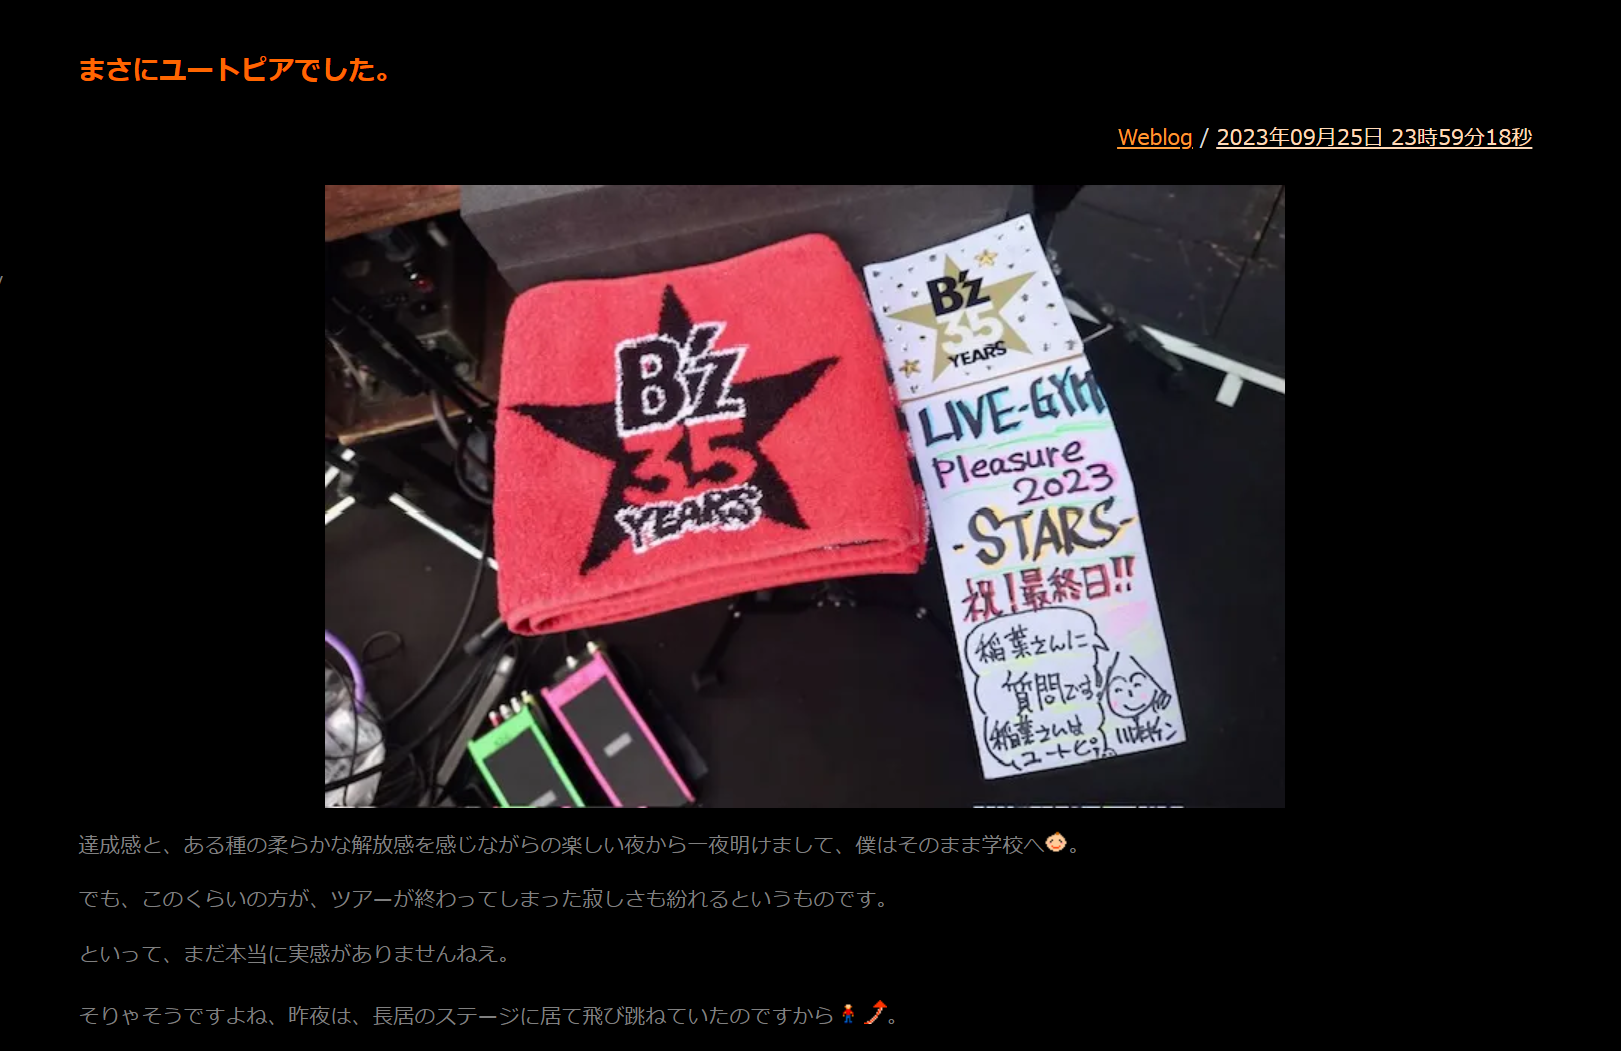 川村ケンがB'z『STARS』ツアー千秋楽を終えて綴ったブログ記事のサムネイルのキャプチャ画像